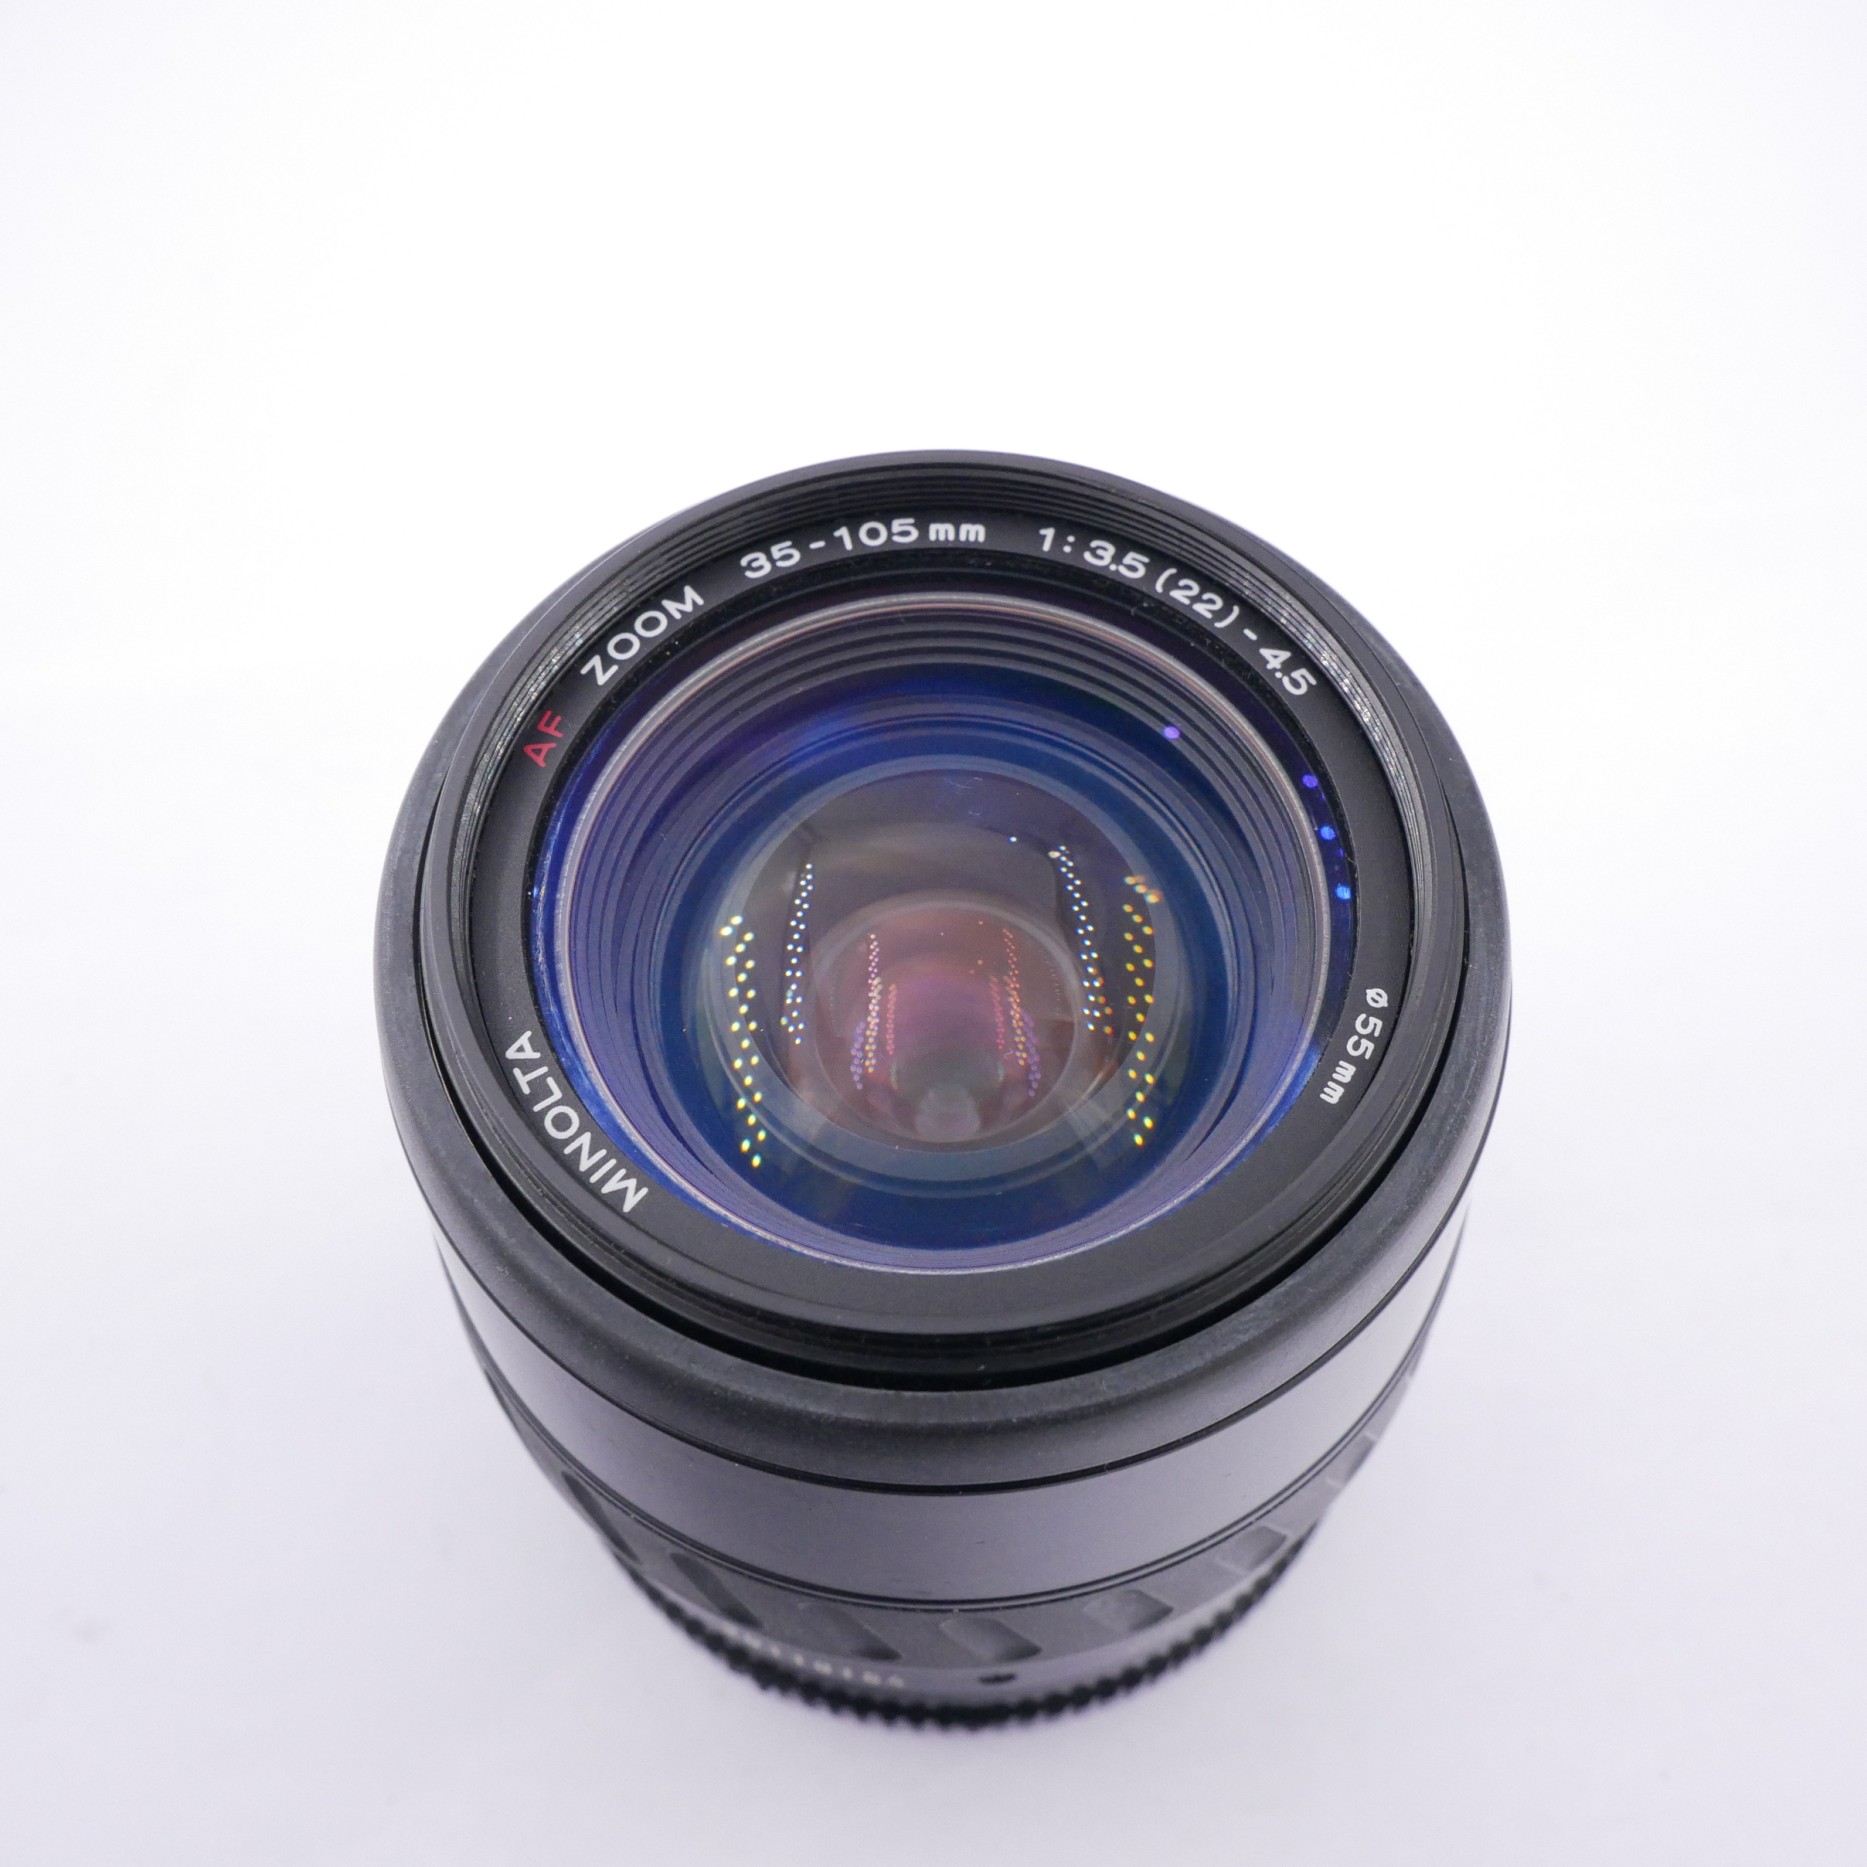 S-H-6WV8HT_2.jpg - Minolta AF 35-105mm F3.5-4.5 Lens 